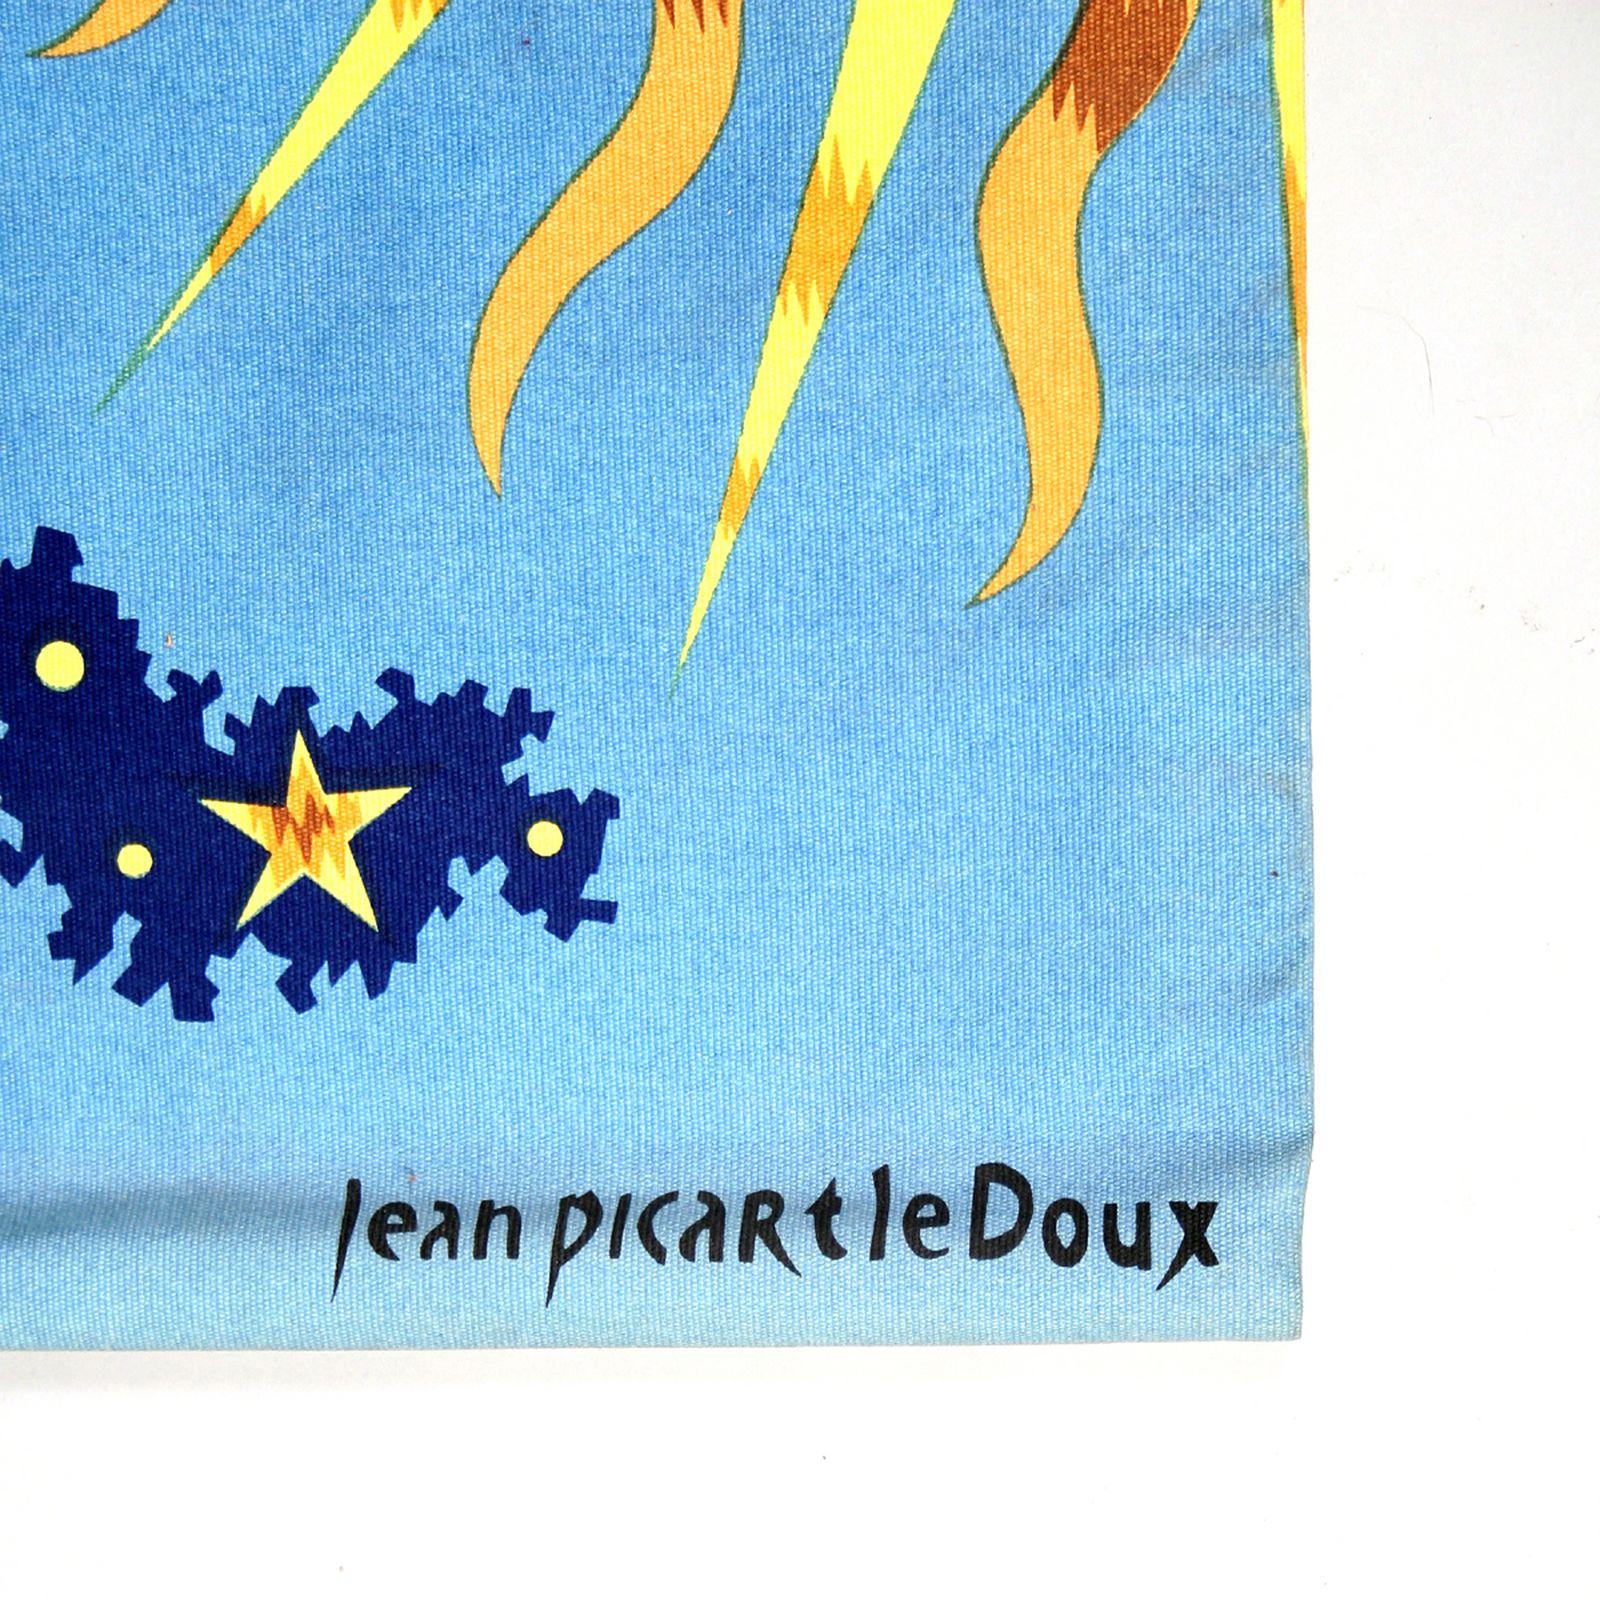 Dies ist ein wunderschöner Wandteppich des bekannten Gobelinmachers Jean Picart le Doux. Es ist unten rechts signiert. Der Wandteppich trägt auf dem Label auf der Rückseite die Bezeichnung 